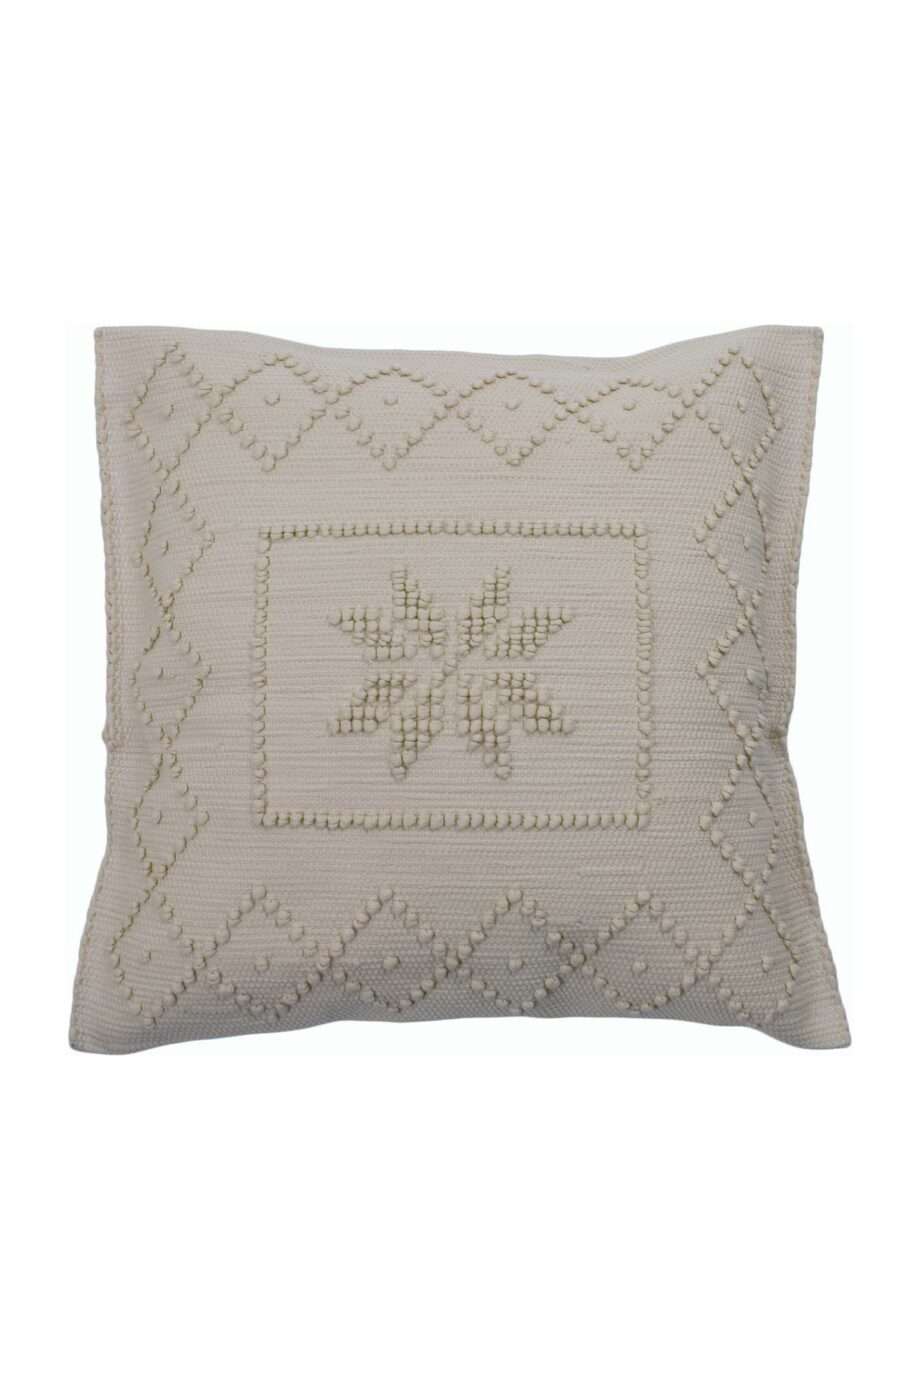 star linen woven cotton pillowcase medium